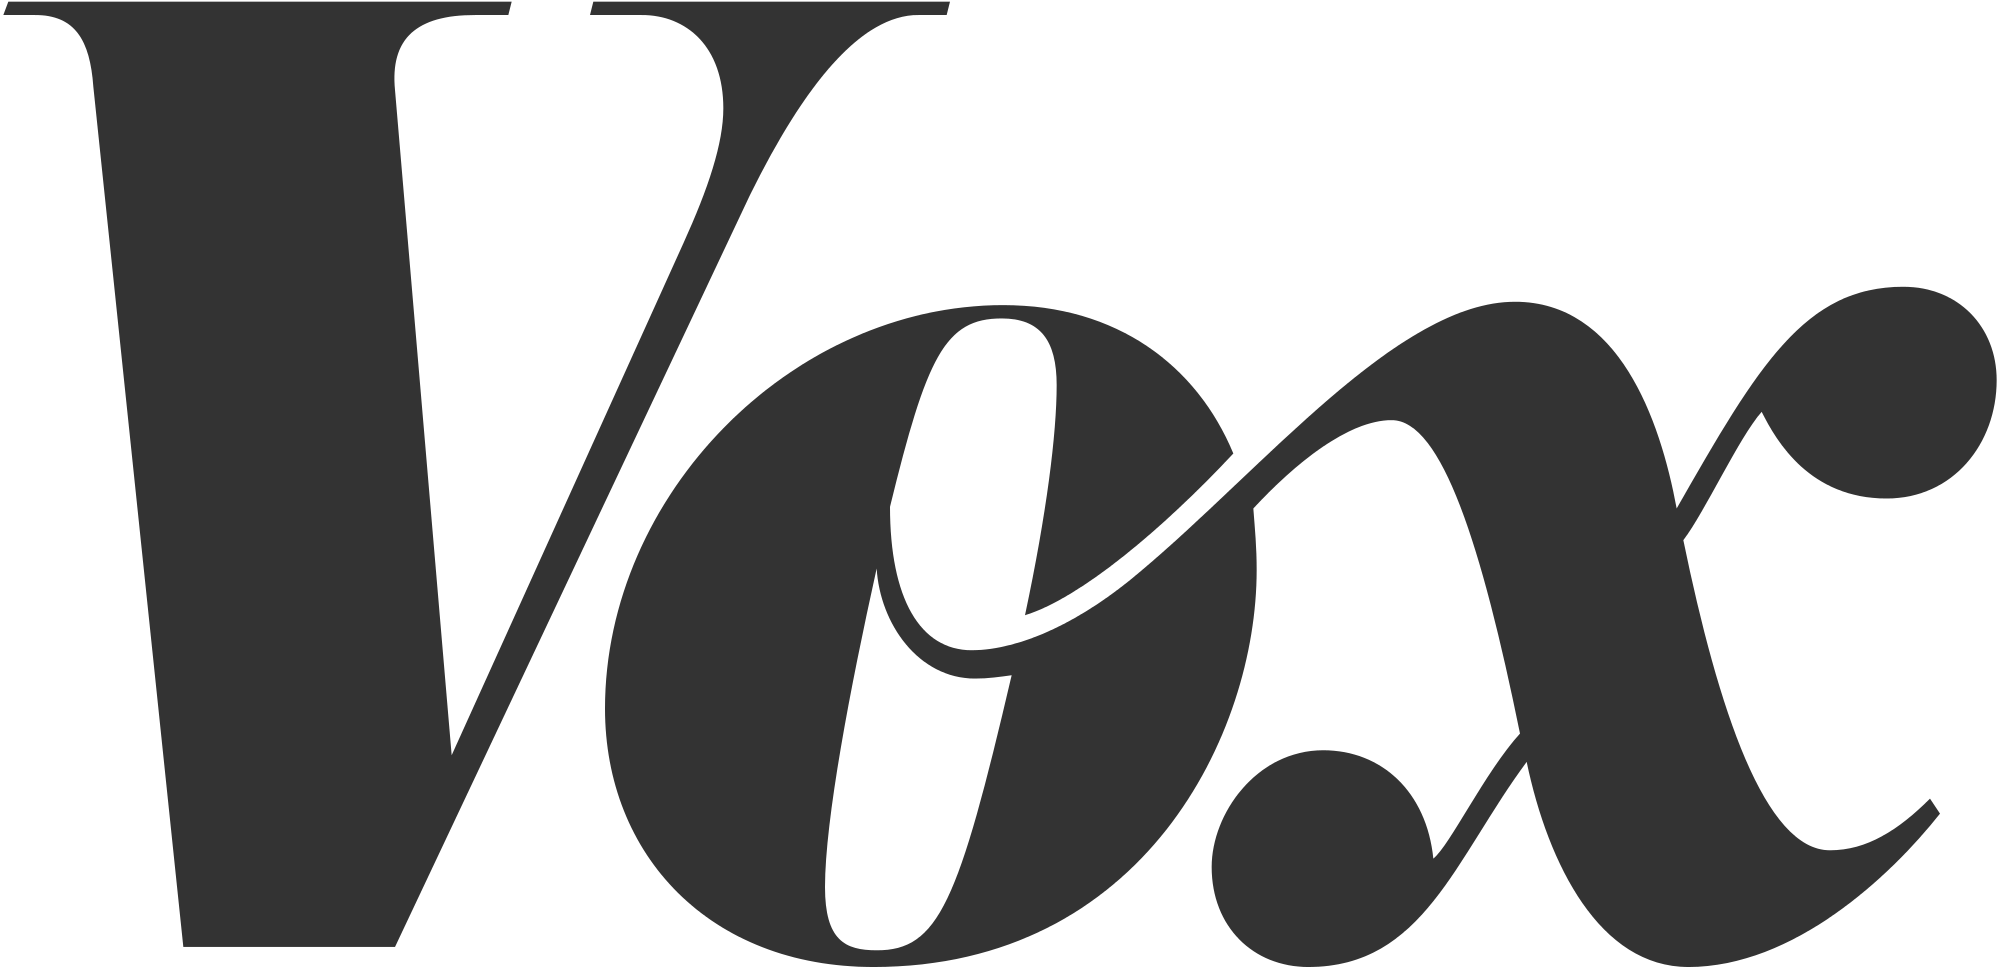 типографіка - до якої категорії шрифтів відноситься логотип Vox? - Графічний дизайн ...